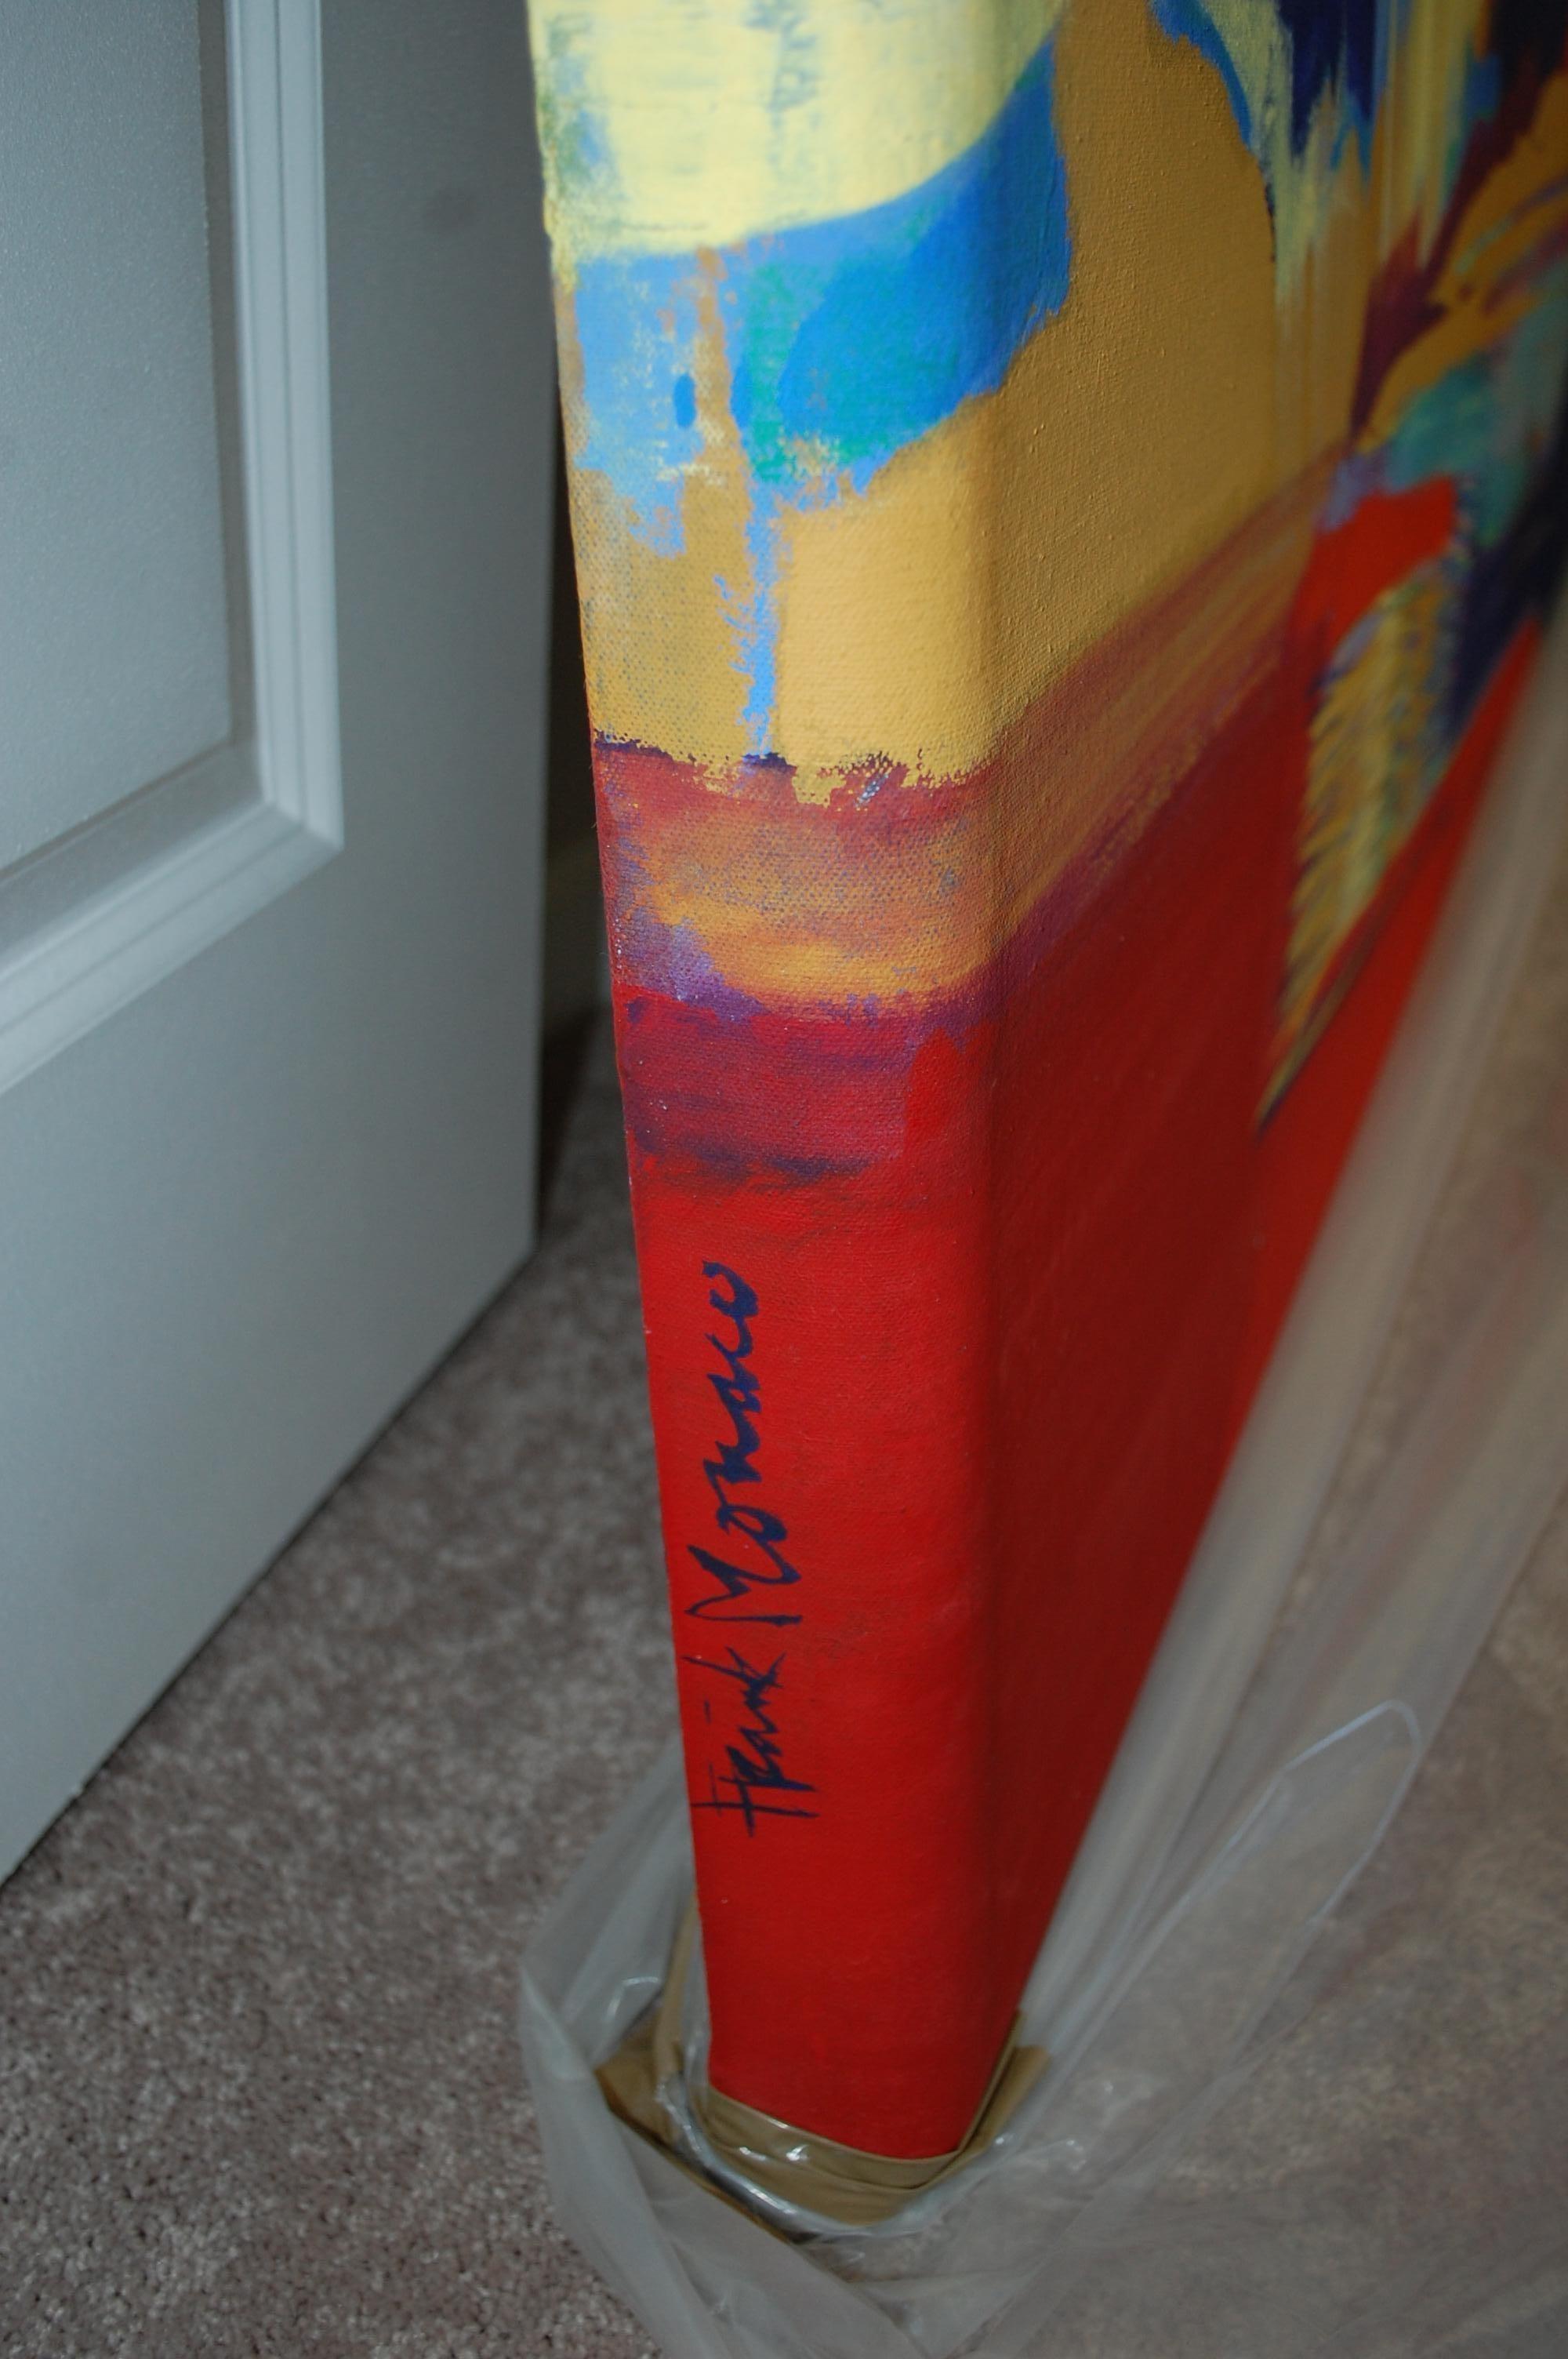 Florida Keys #1, 2017
Fine Art Vinylfarbe auf grundierter Leinwand im Gallery Art Format.
Dieses Gemälde wurde im Boca Museum, Boca Raton FL, ausgestellt.  (im Katalog). 
Frank Monaco.
Studierte und arbeitete mit Marilyn Stiles vom Art Institute of